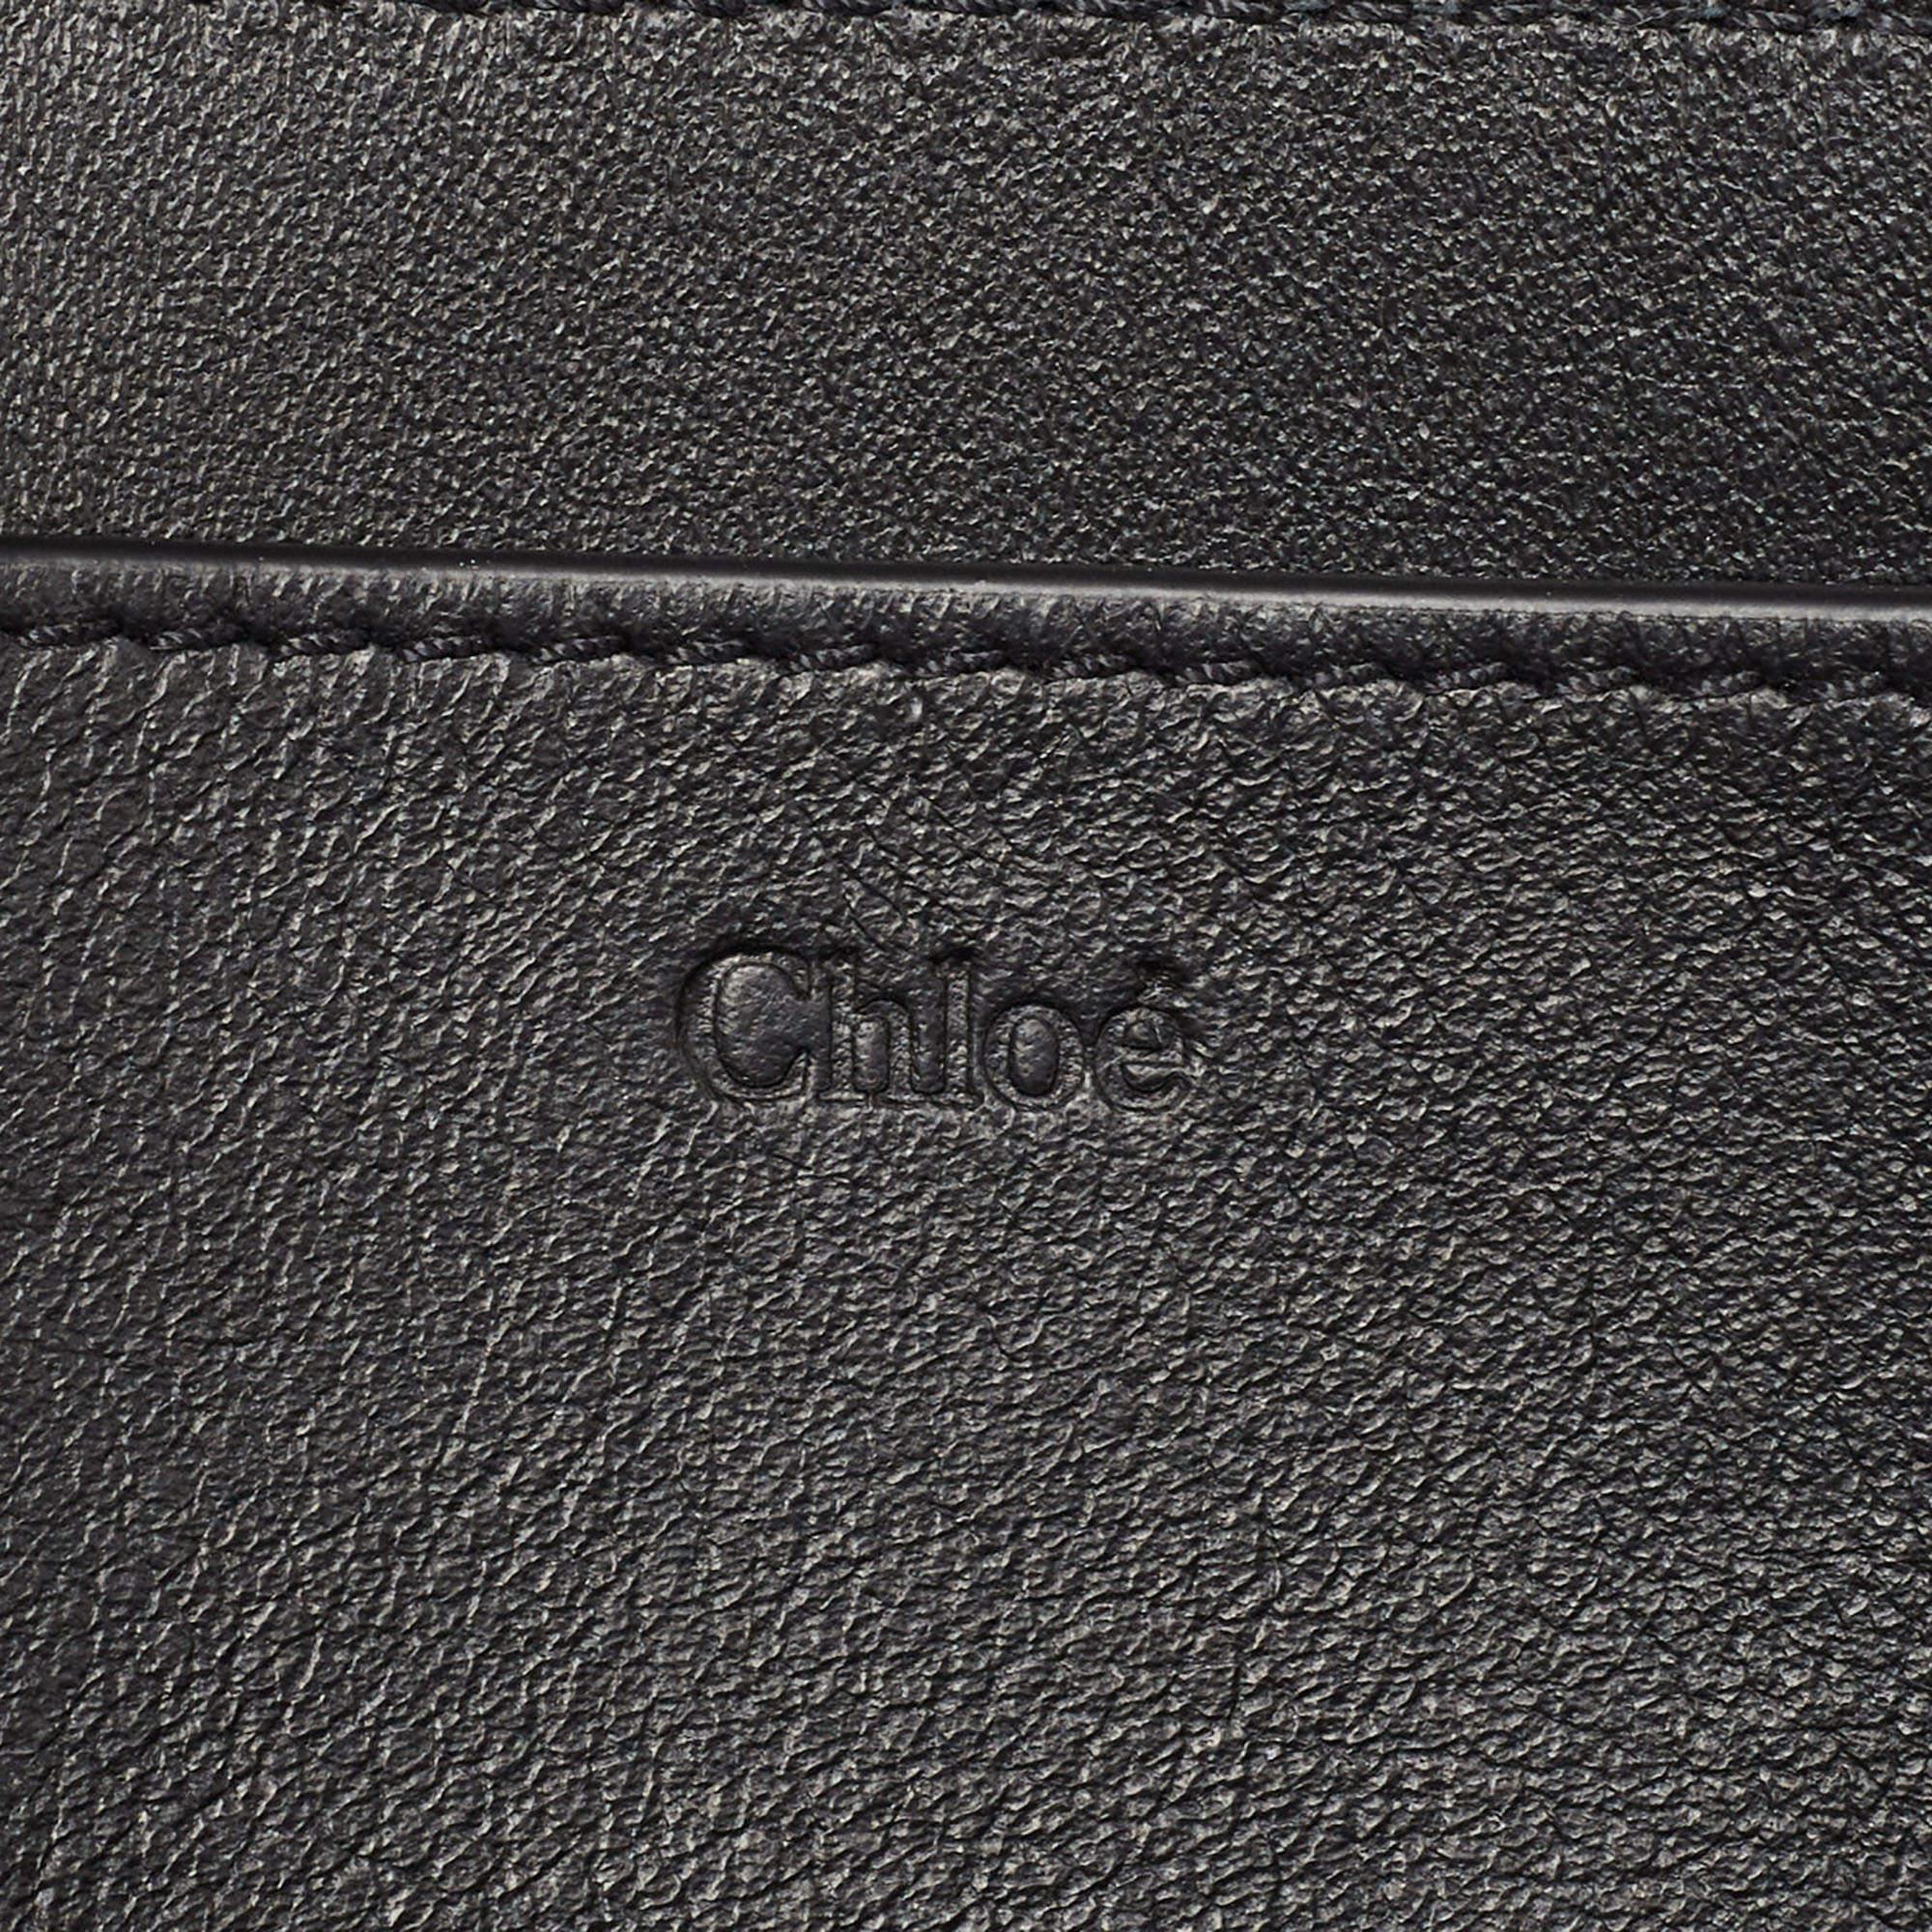 Chloe Black Leather Drew Bijou Clutch For Sale 1